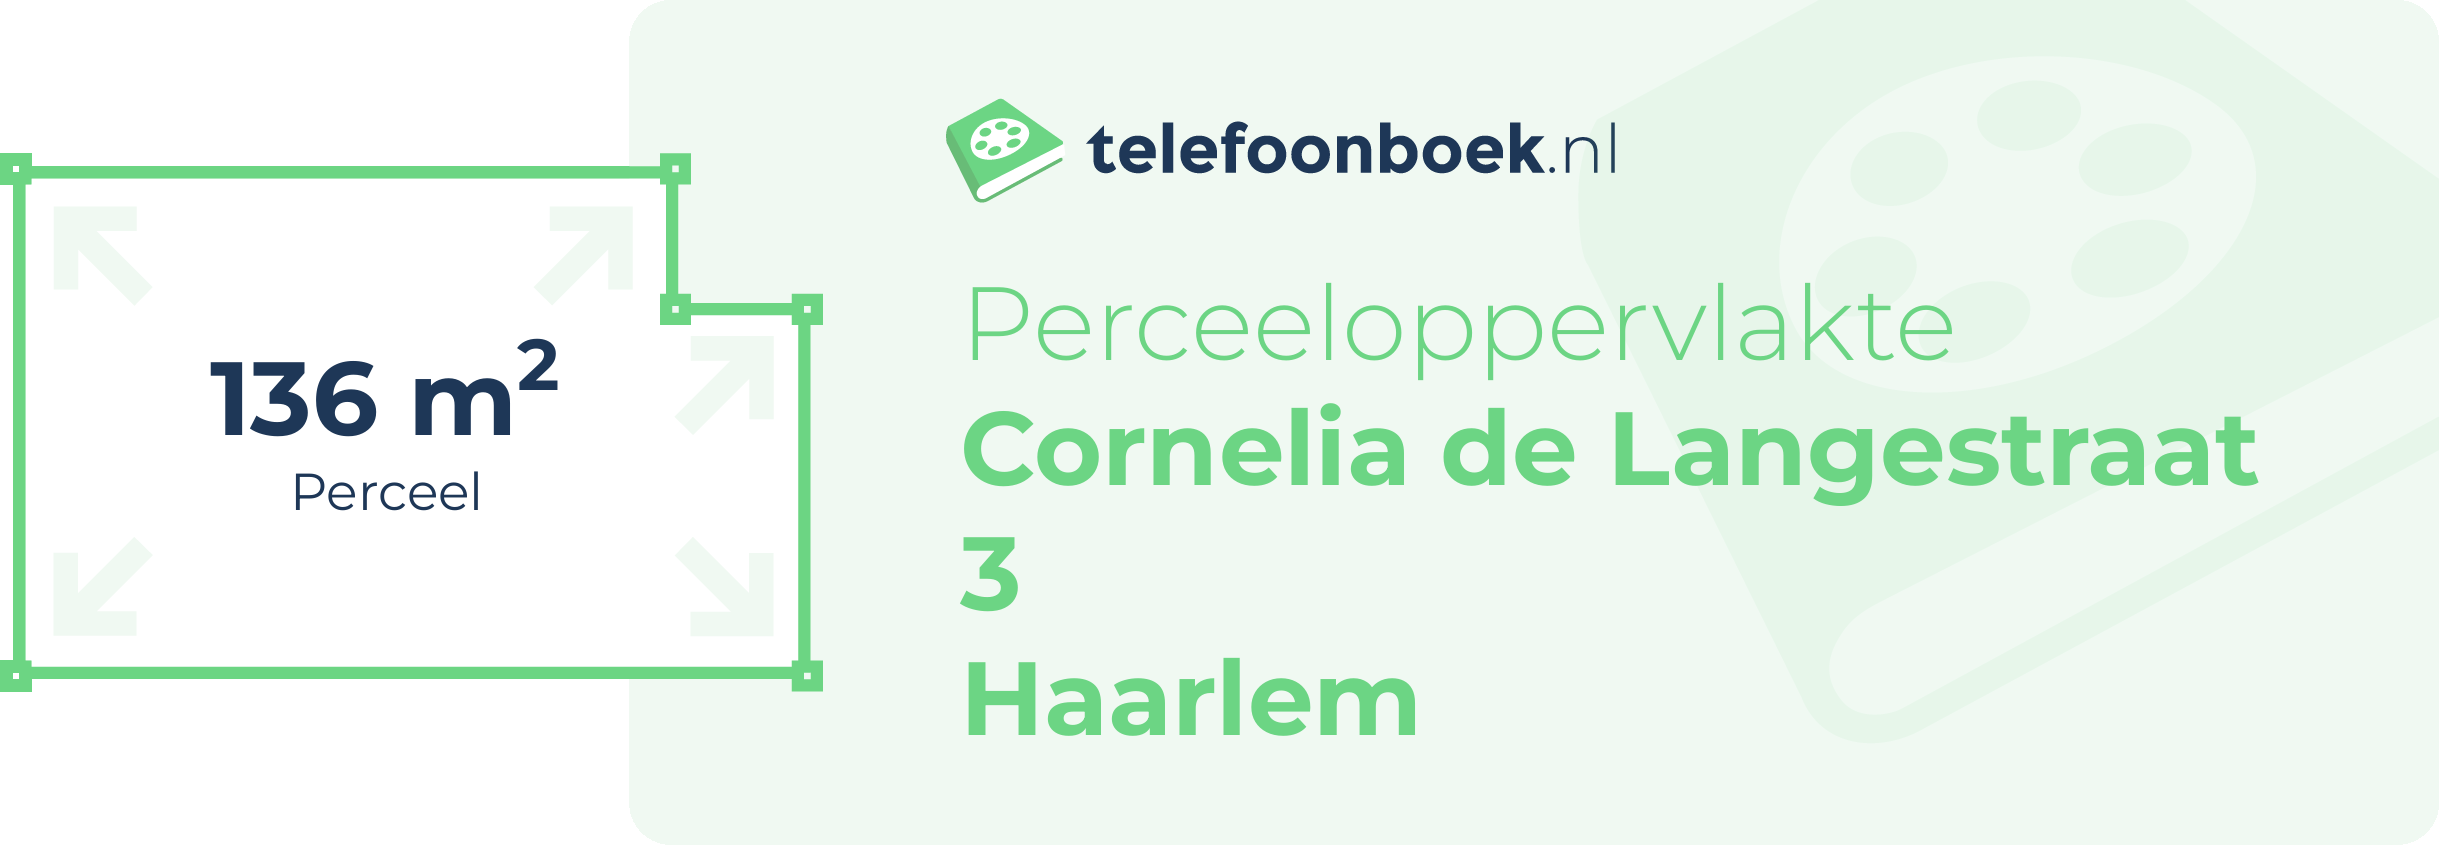 Perceeloppervlakte Cornelia De Langestraat 3 Haarlem